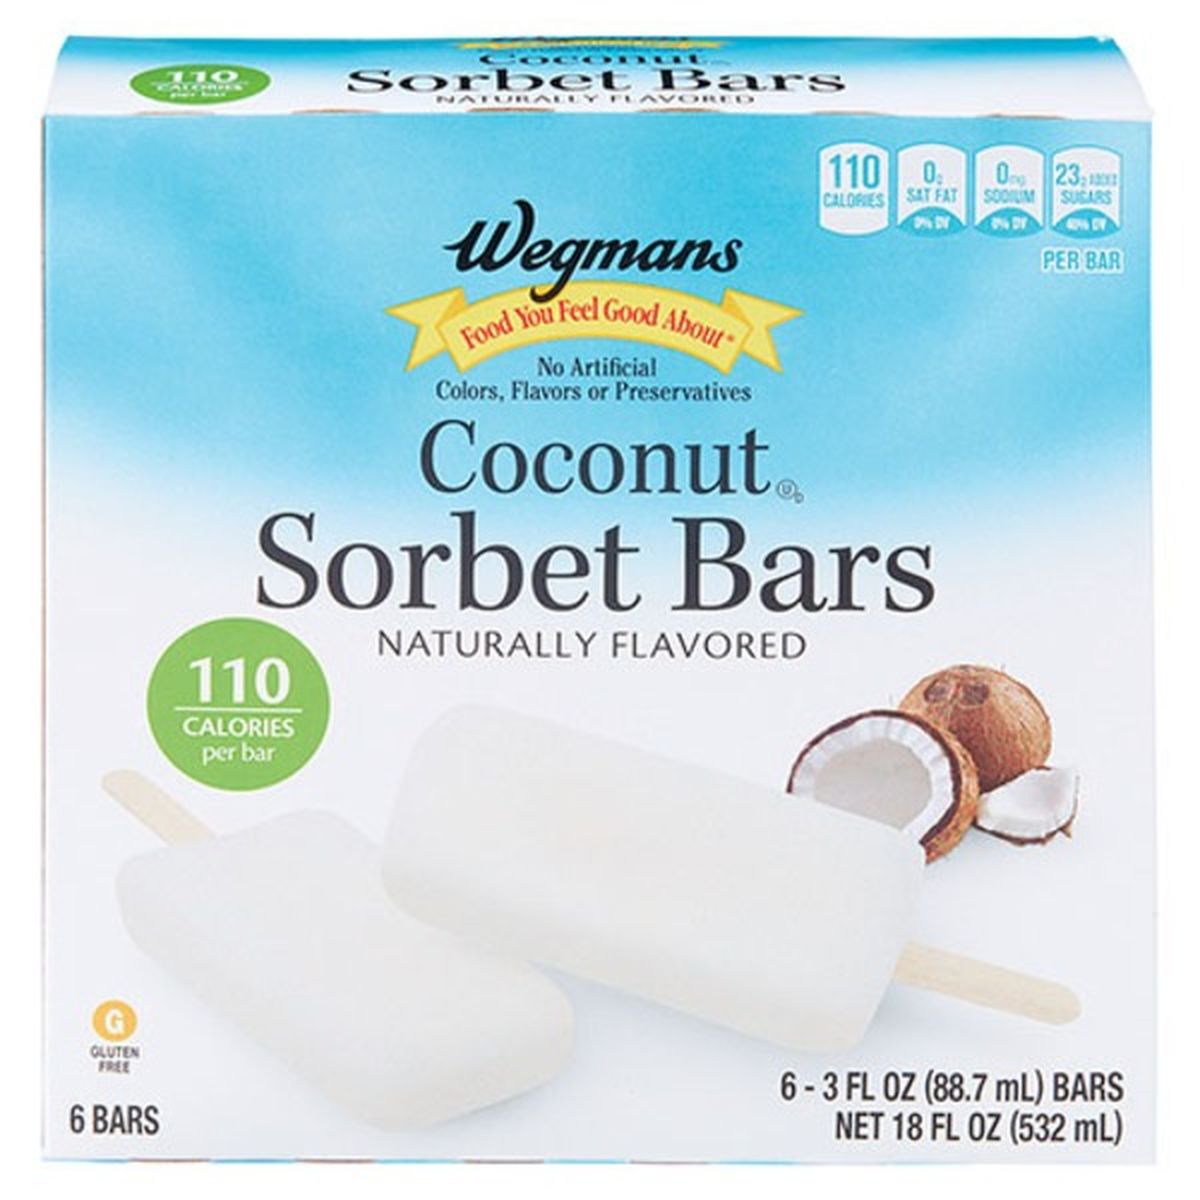 Calories in Wegmans Coconut Sorbet Bars